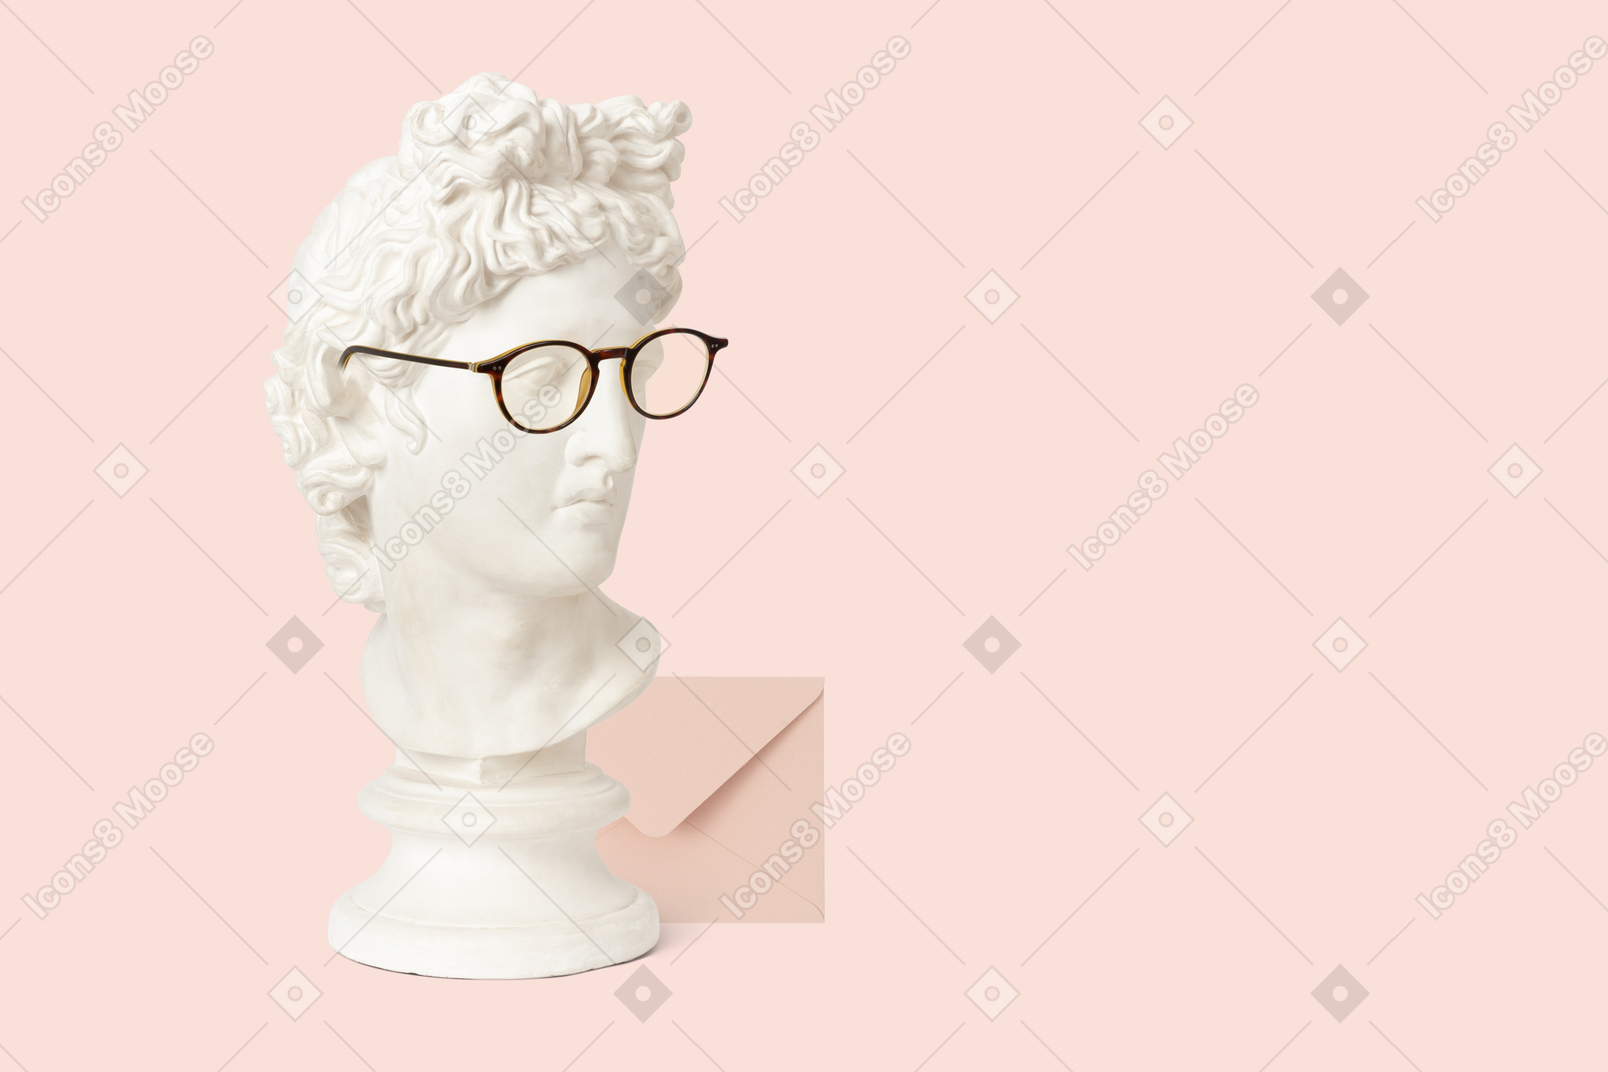 Busto di statua con gli occhiali accanto a una busta